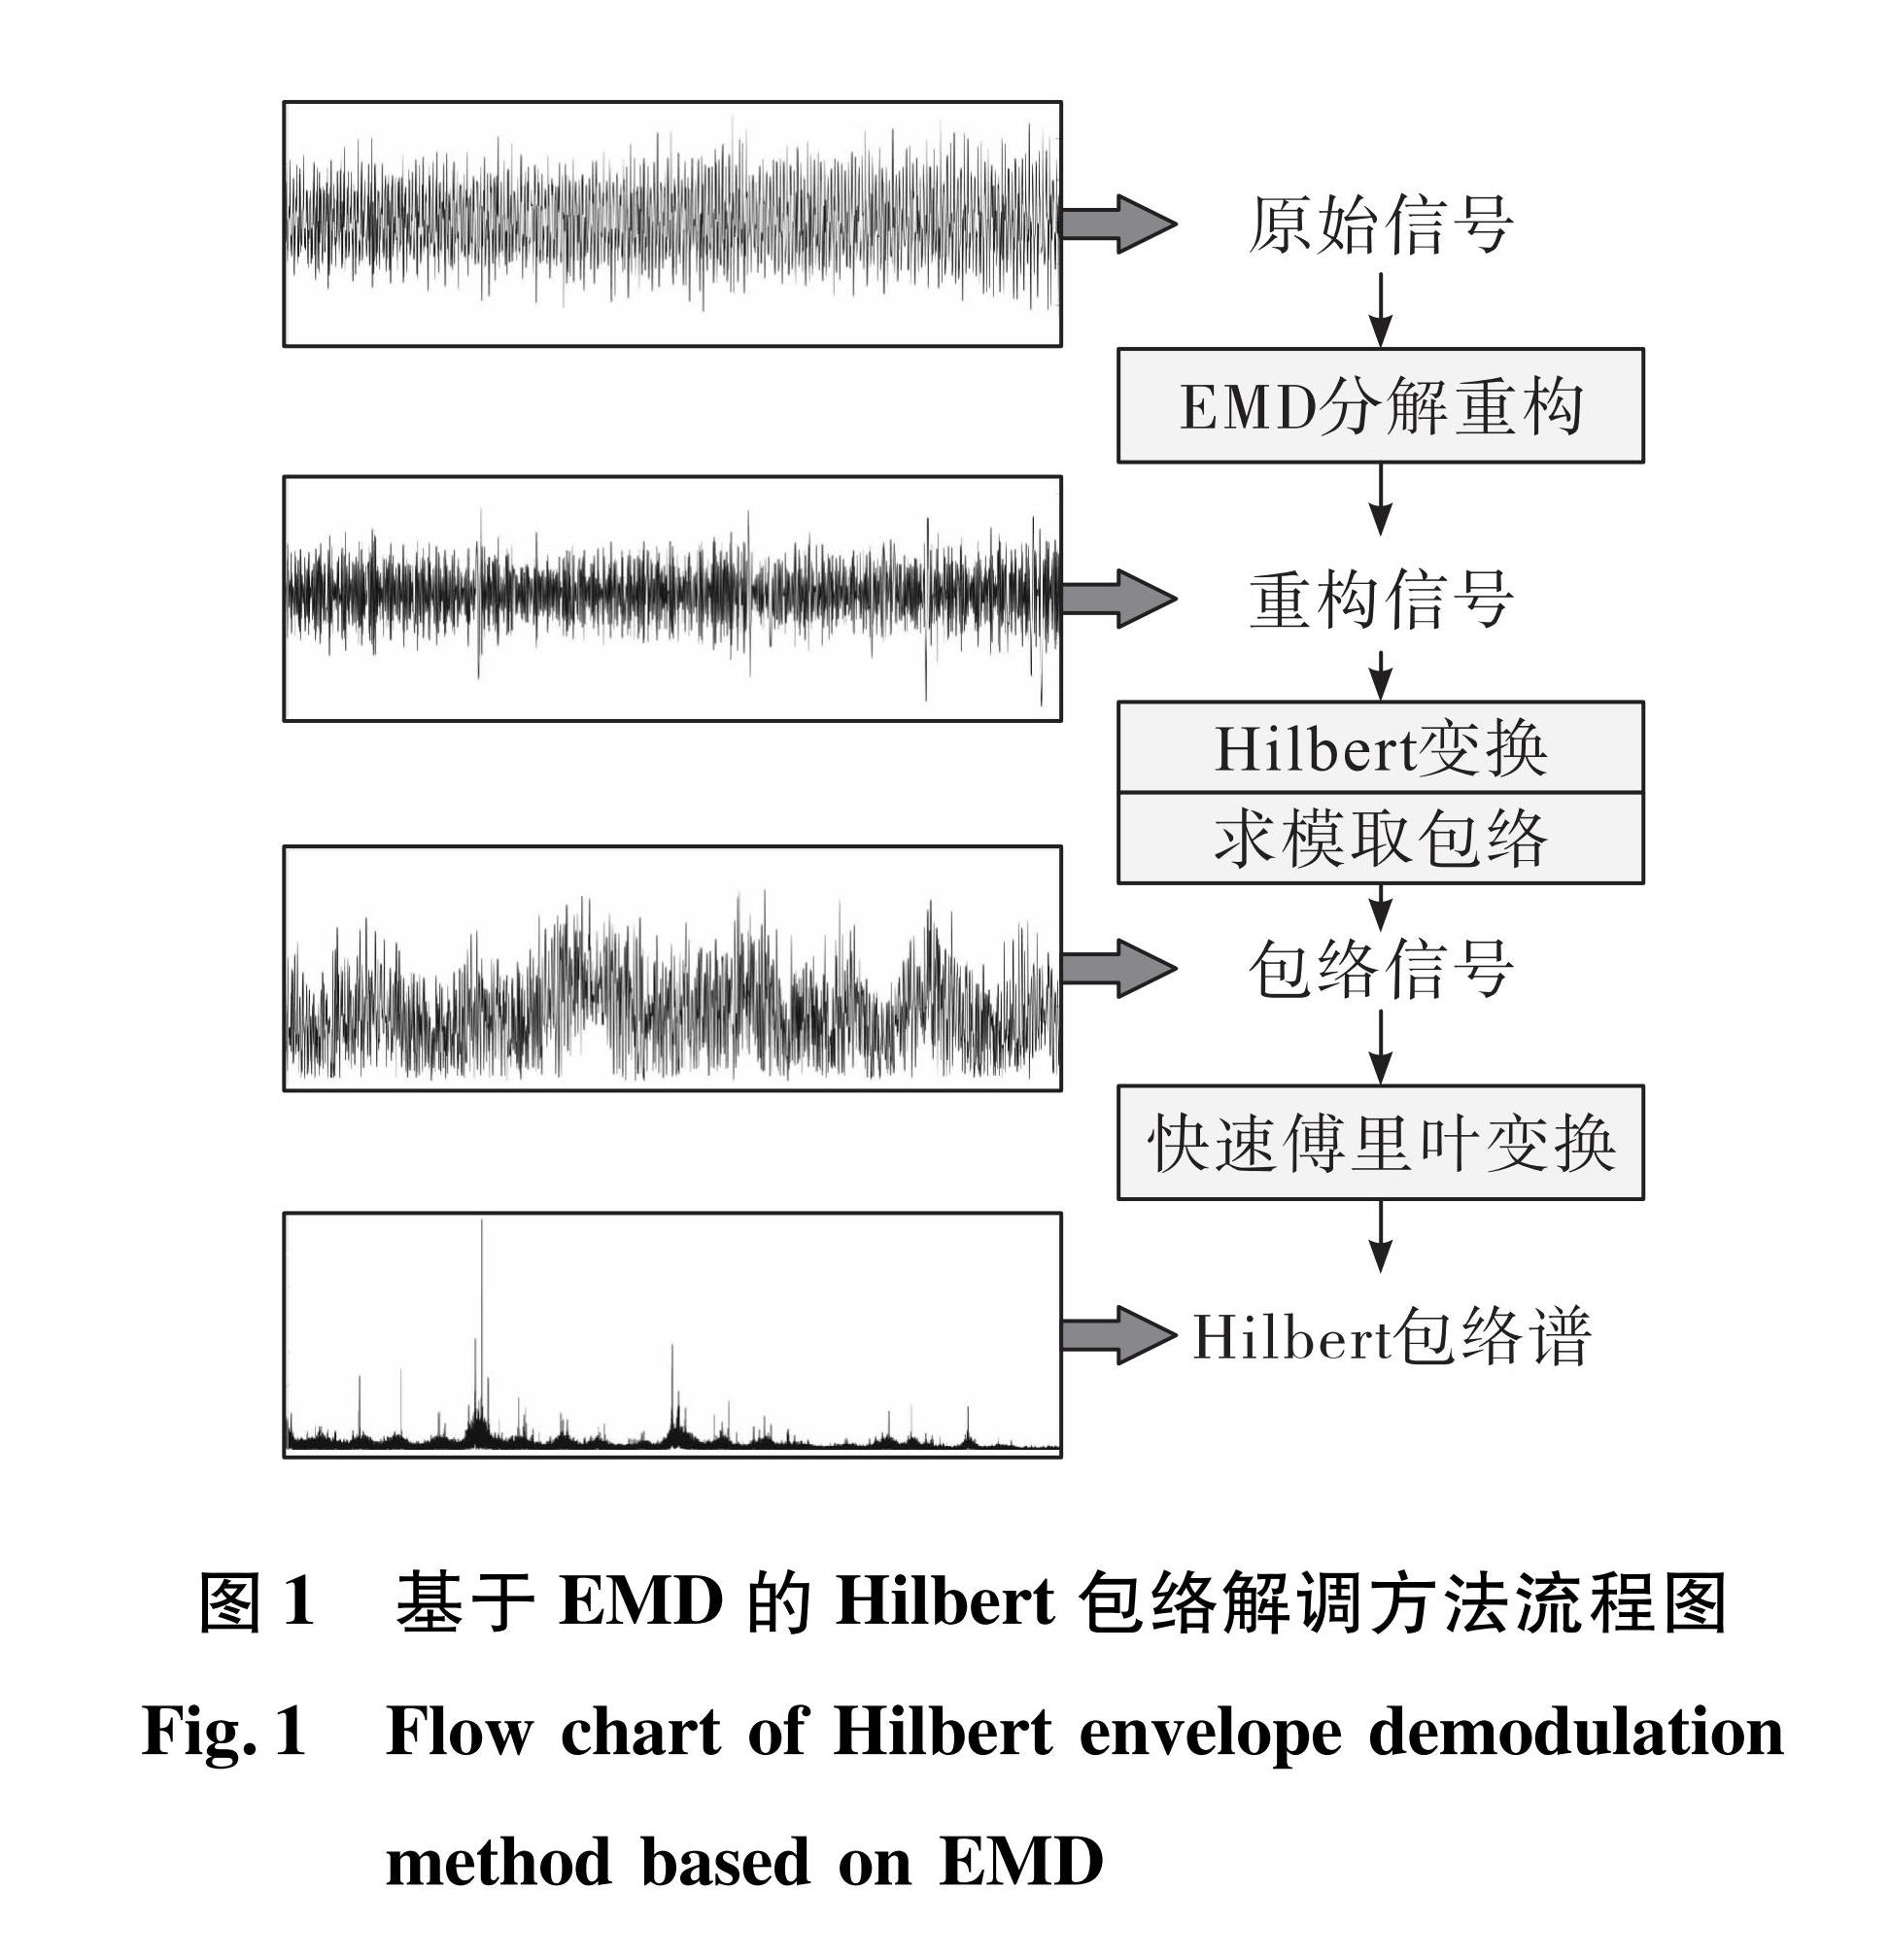 图1 基于EMD的Hilbert包络解调方法流程图<br/>Fig.1 Flow chart of Hilbert envelope demodulation method based on EMD 